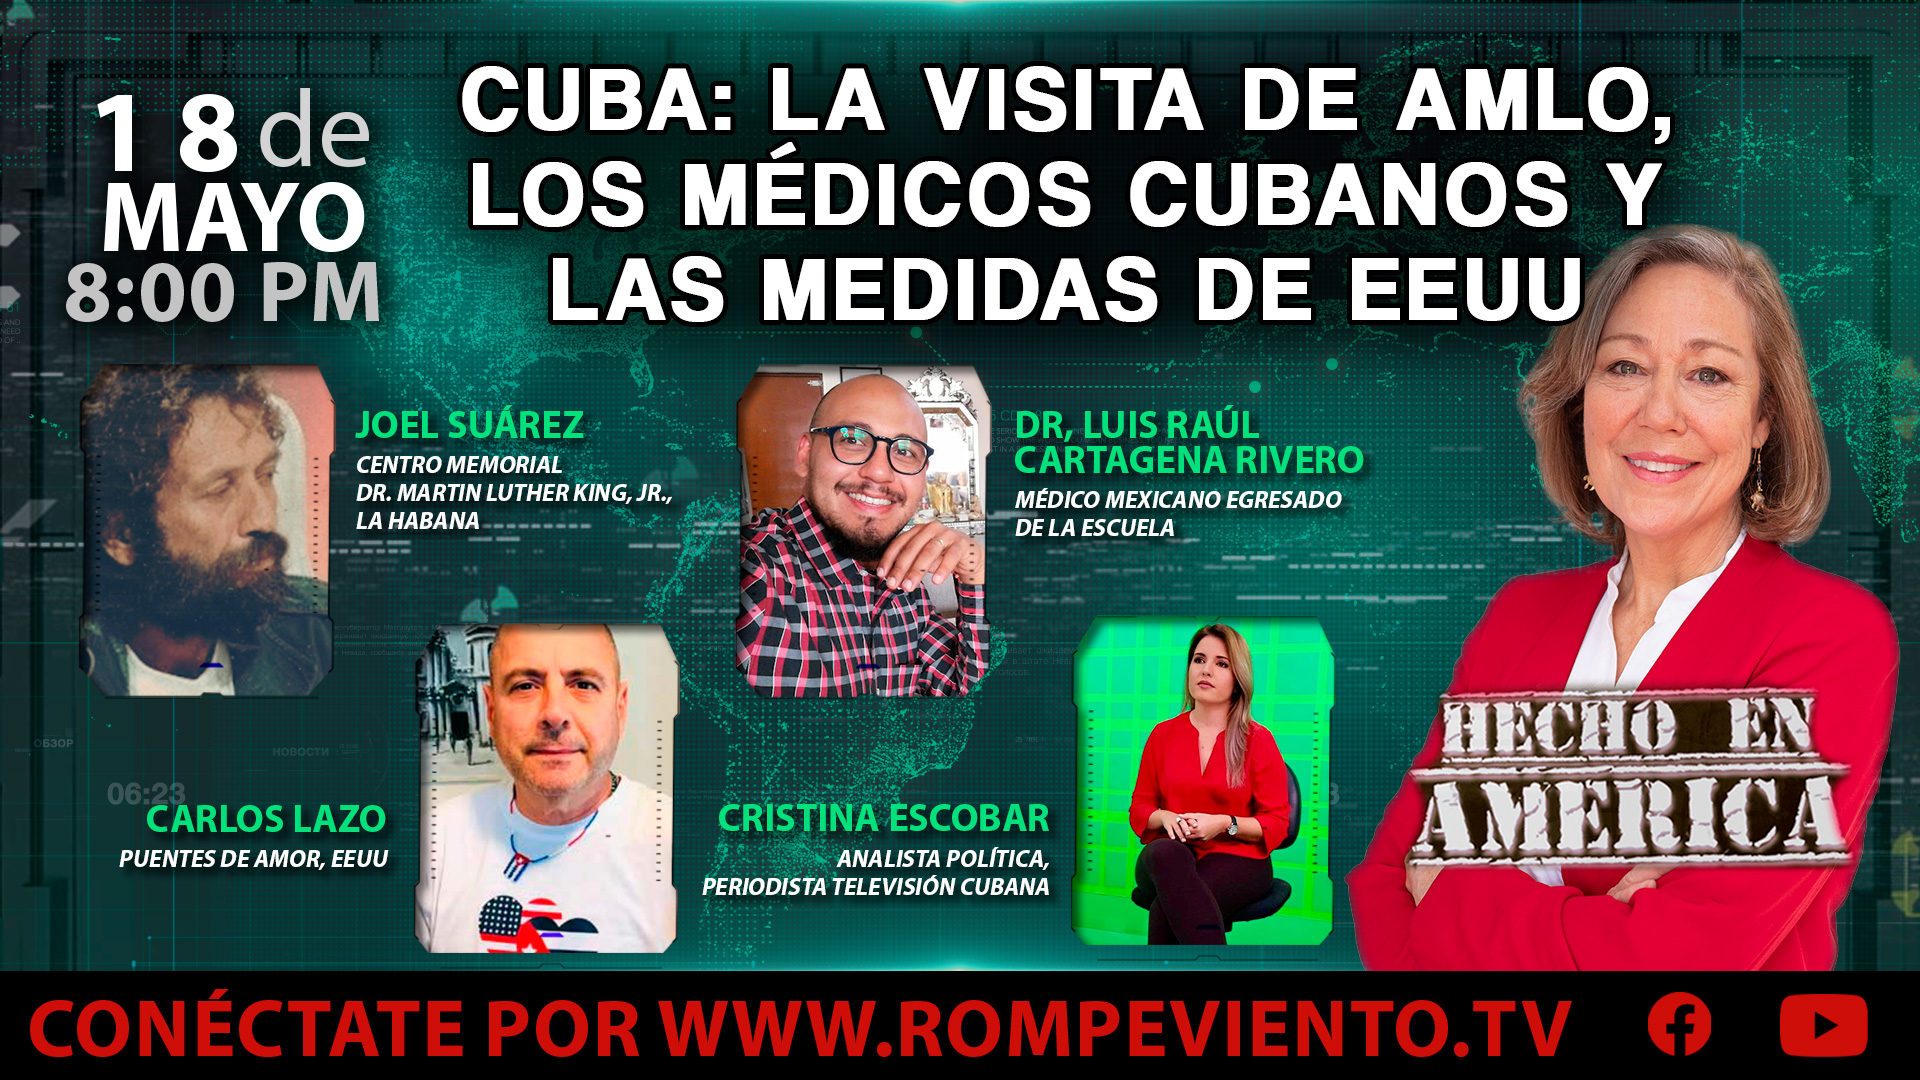 Cuba: la visita de AMLO, los médicos cubanos y las medidas de EEUU - Hecho en América